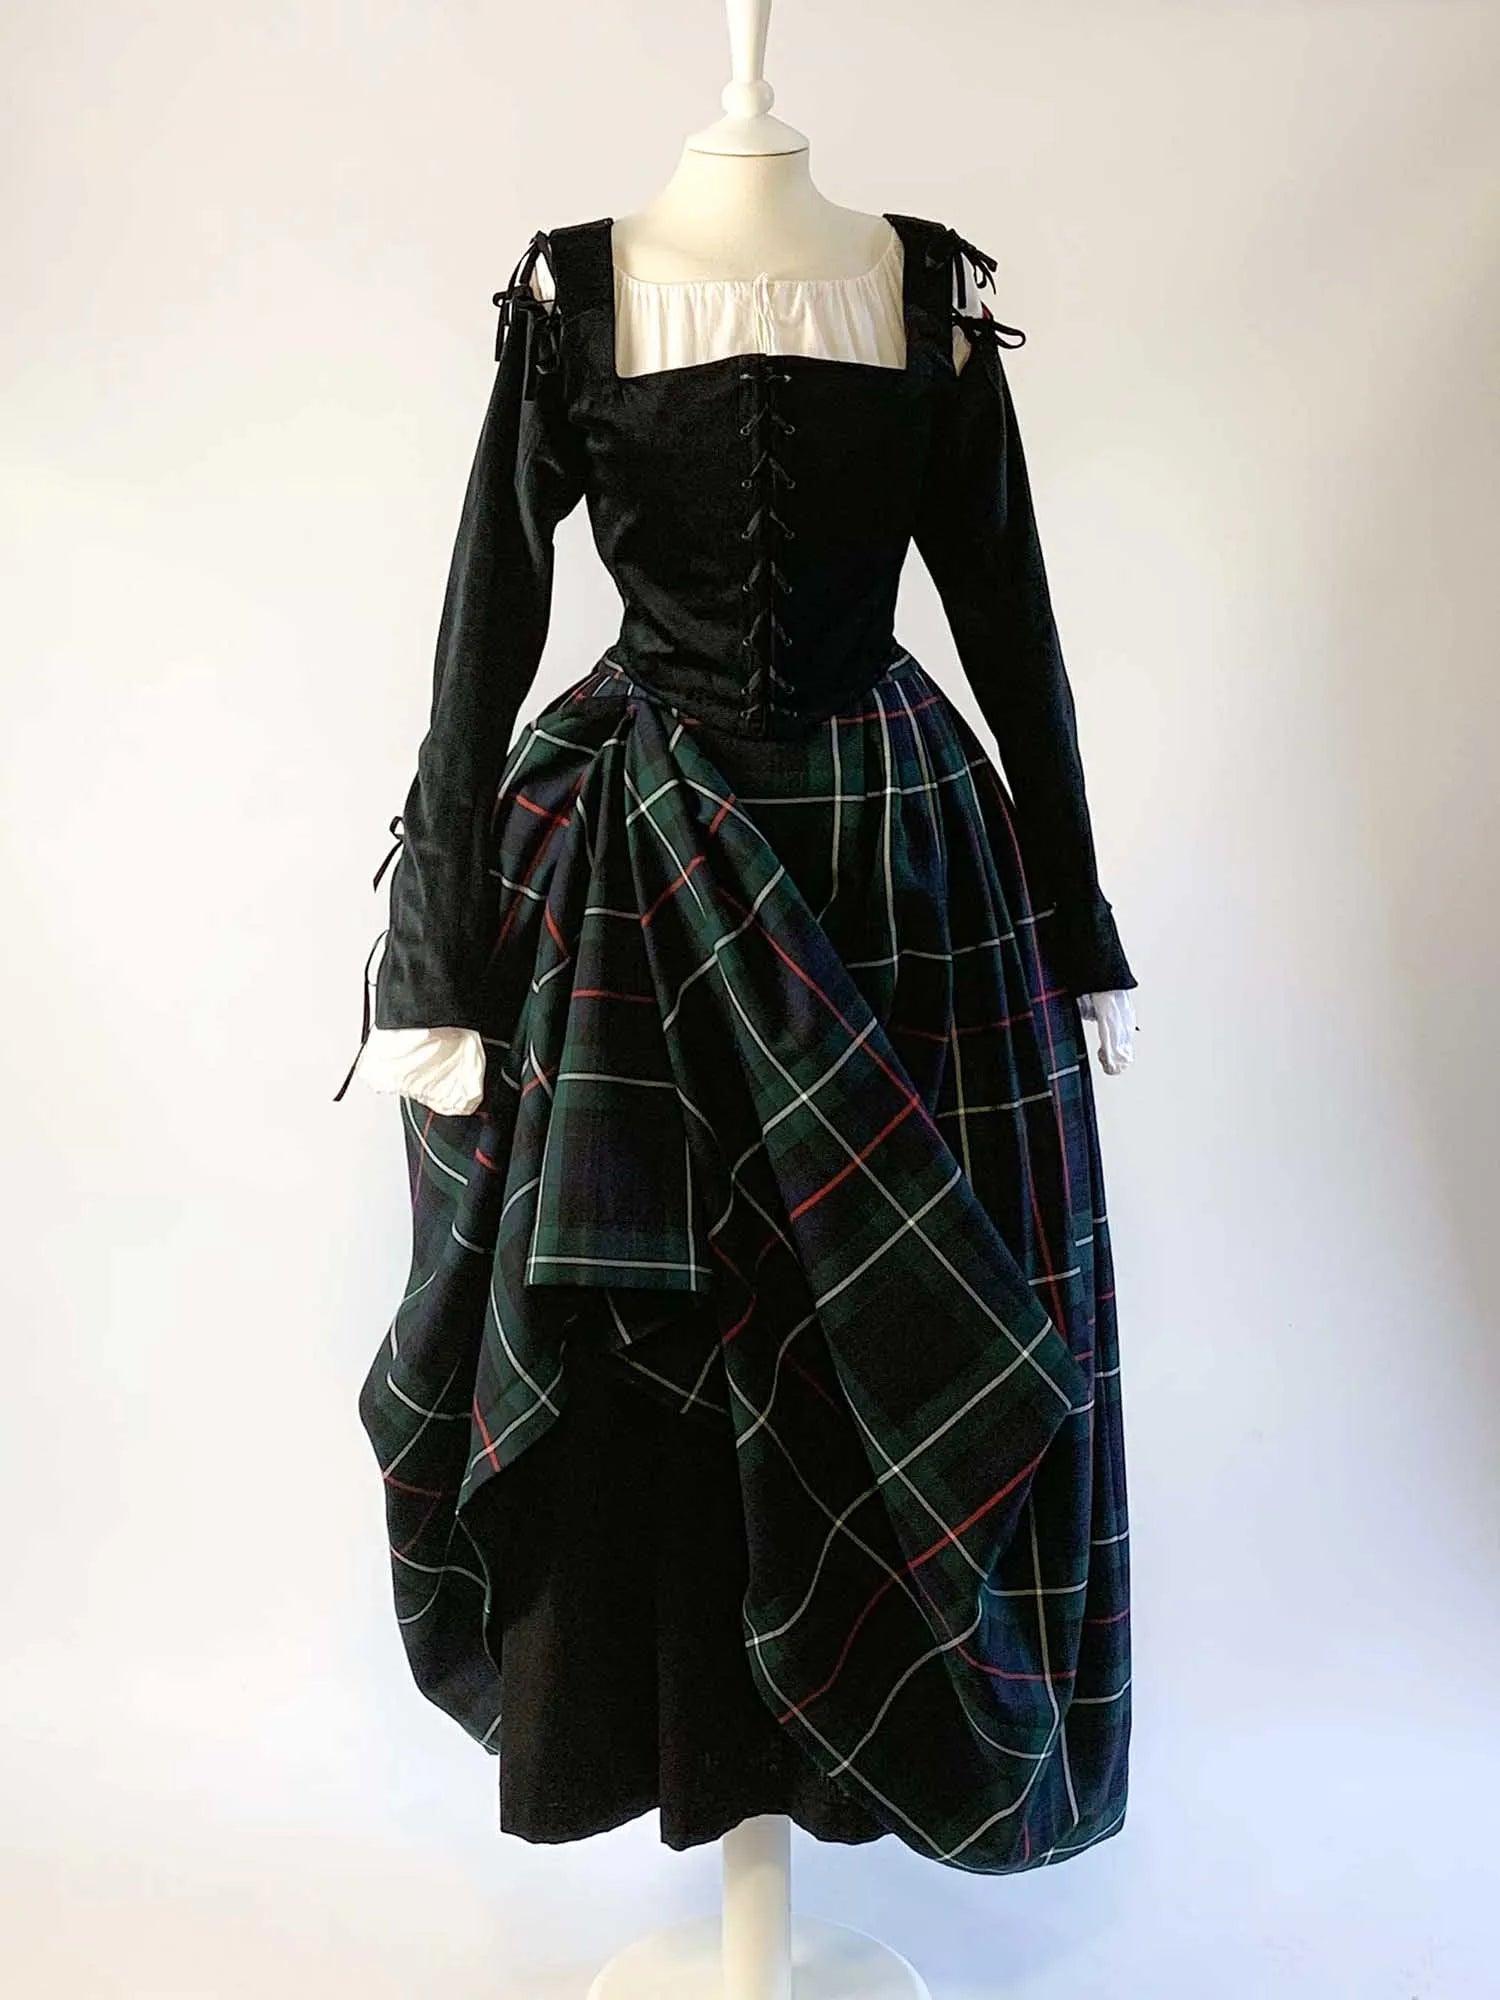 ANN, Renaissance Costume in Black Velvet with Sleeves &amp; Mackenzie Tartan Skirt - Atelier Serraspina